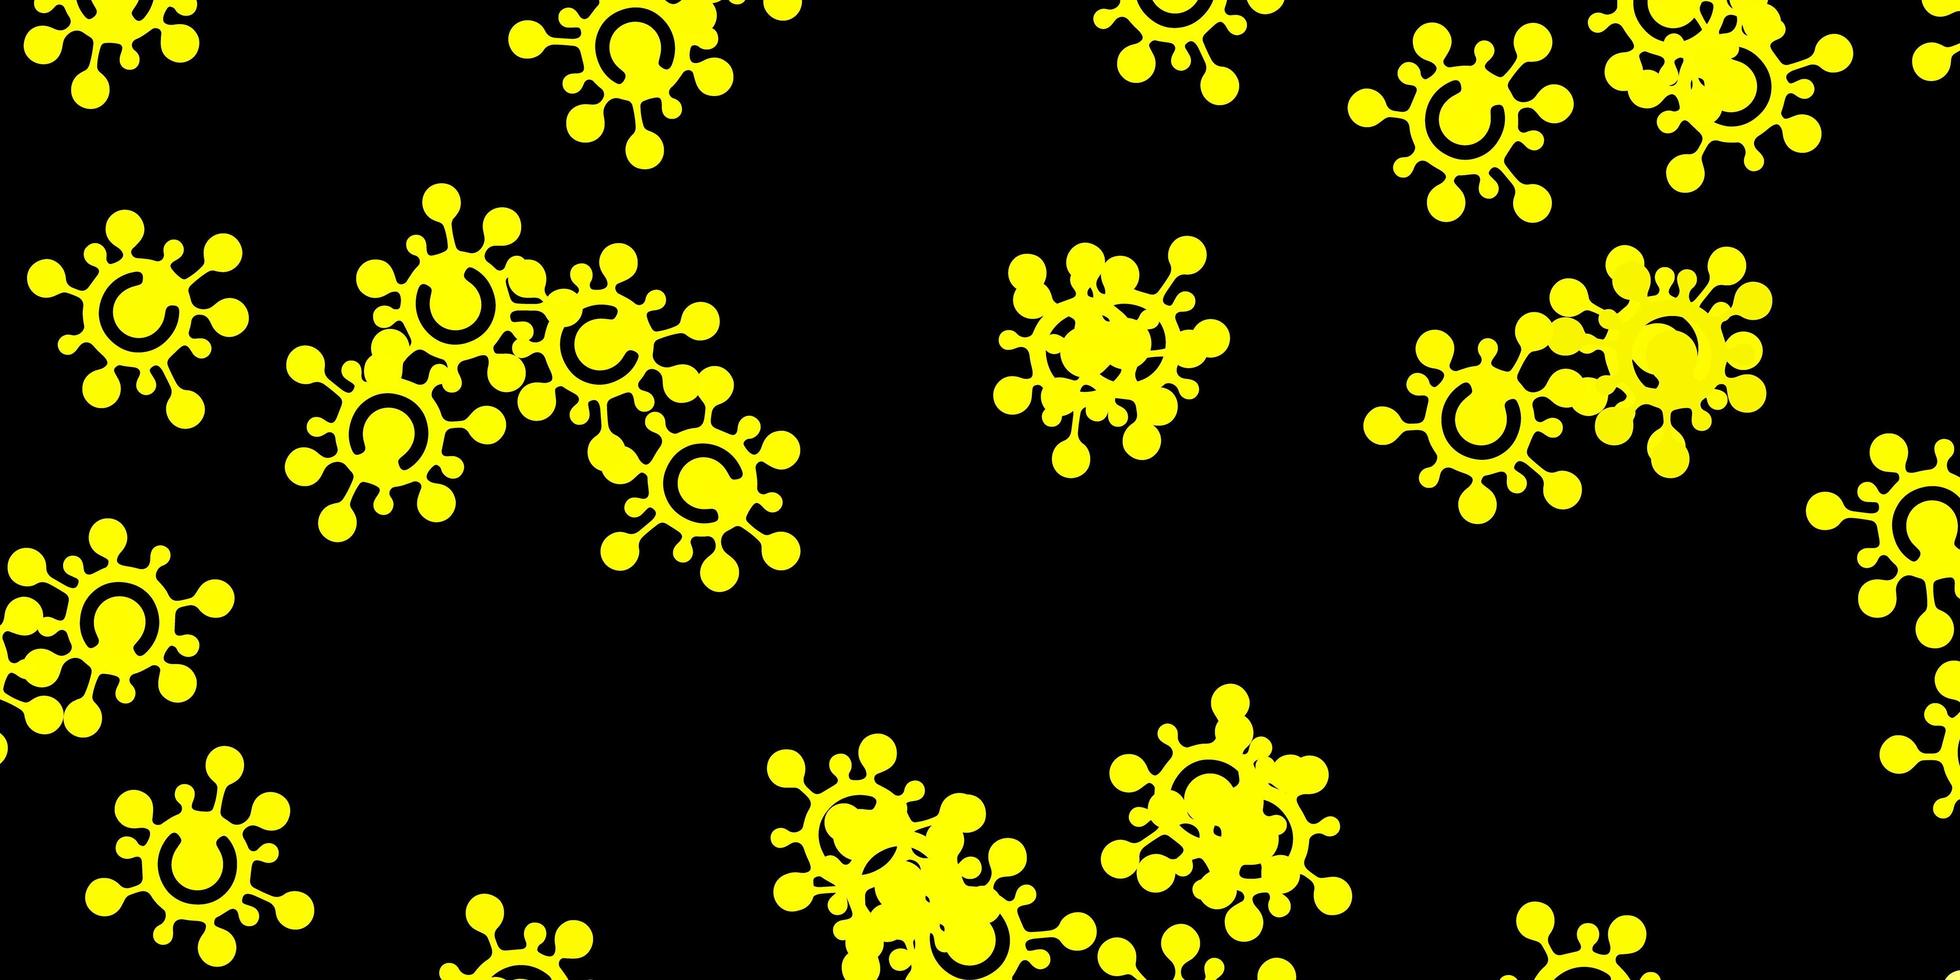 modèle vectoriel jaune foncé avec des signes de grippe.